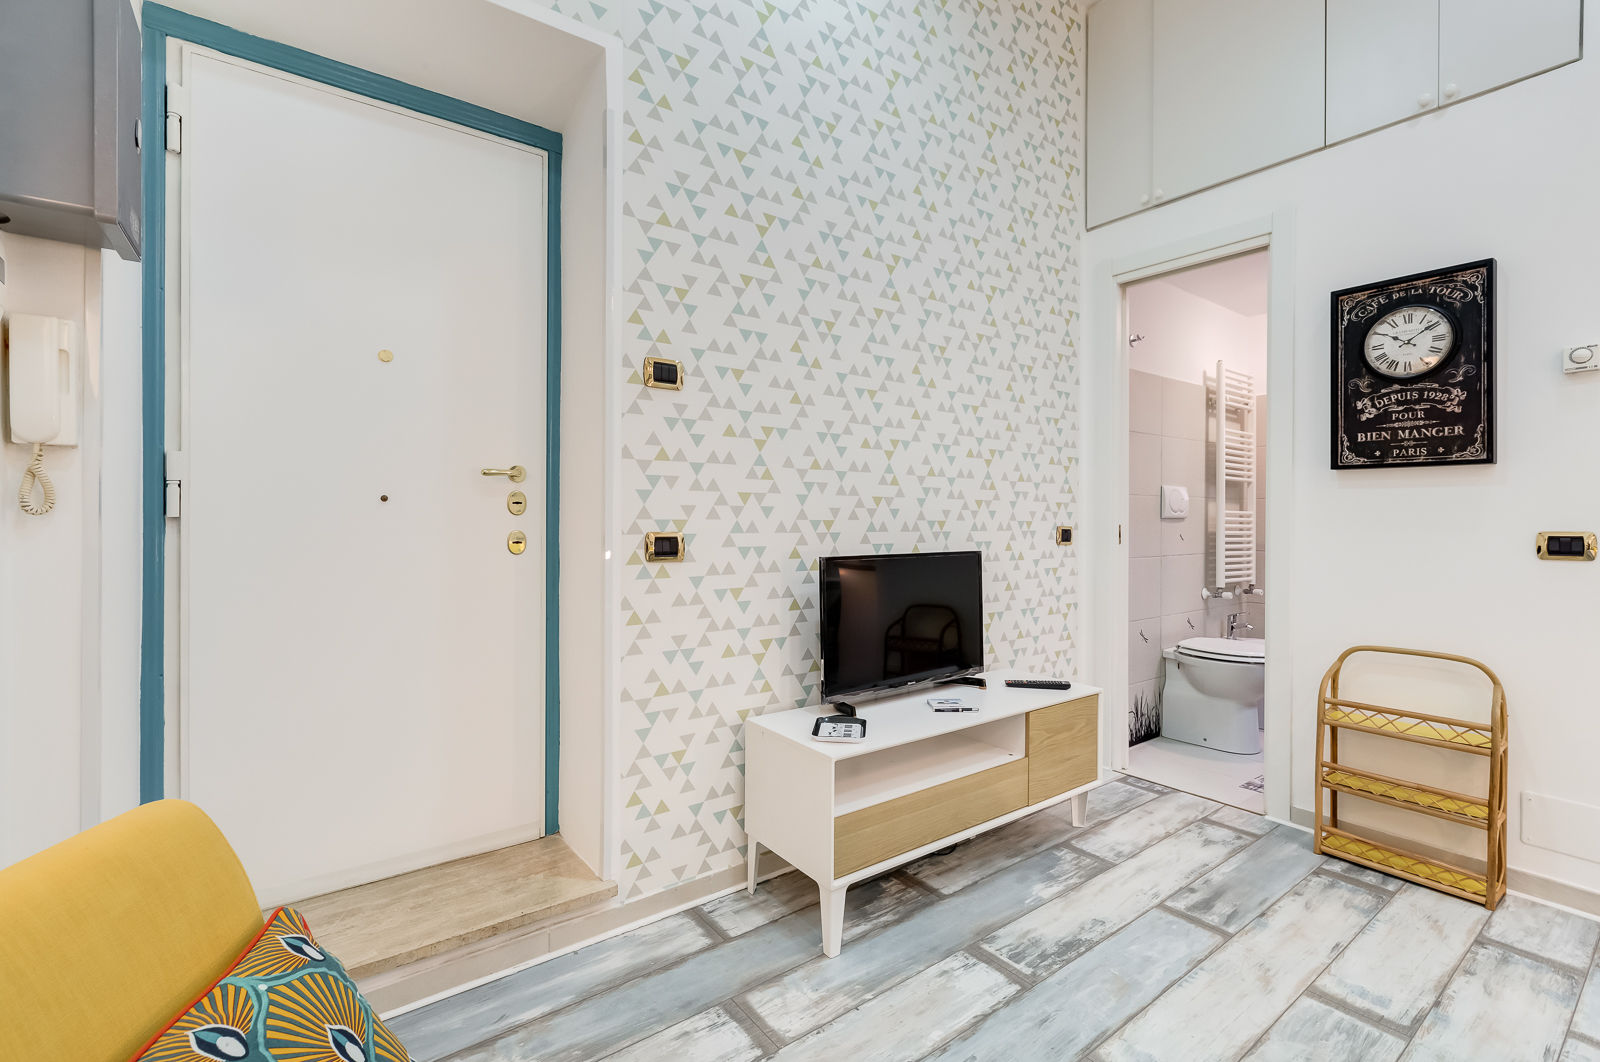 Mini Appartamento Turistico - Roma, Luca Tranquilli - Fotografo Luca Tranquilli - Fotografo Living room